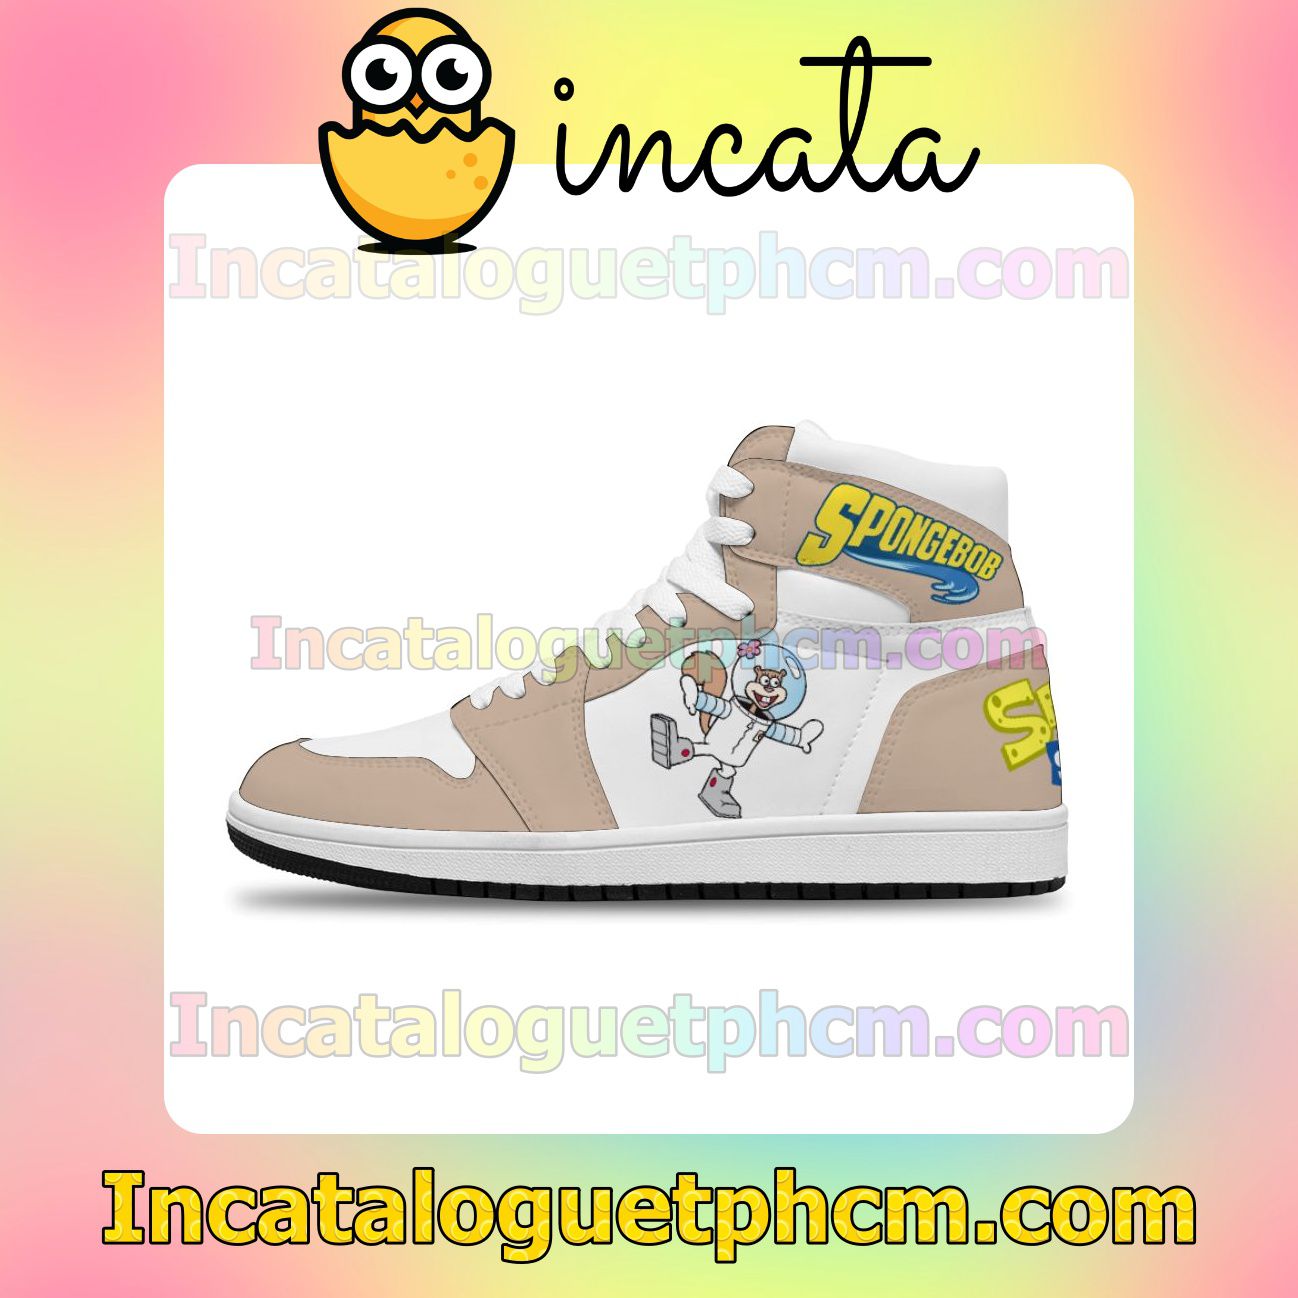 SpongeBob Air Jordan 1 Inspired Shoes